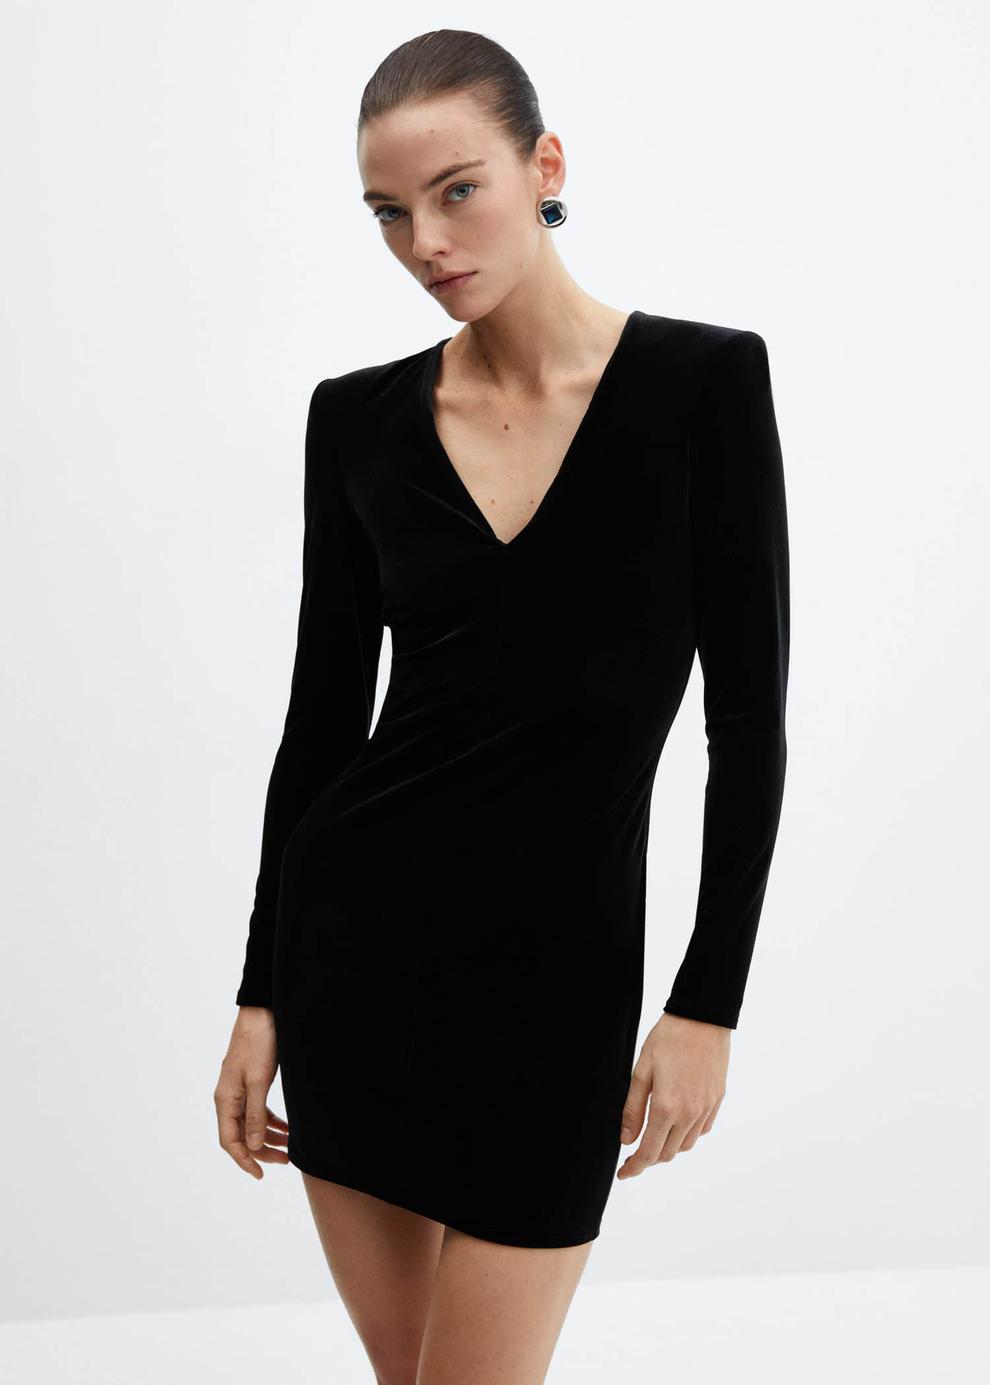 Shoulder pad velvet dress offers at £15.99 in MANGO